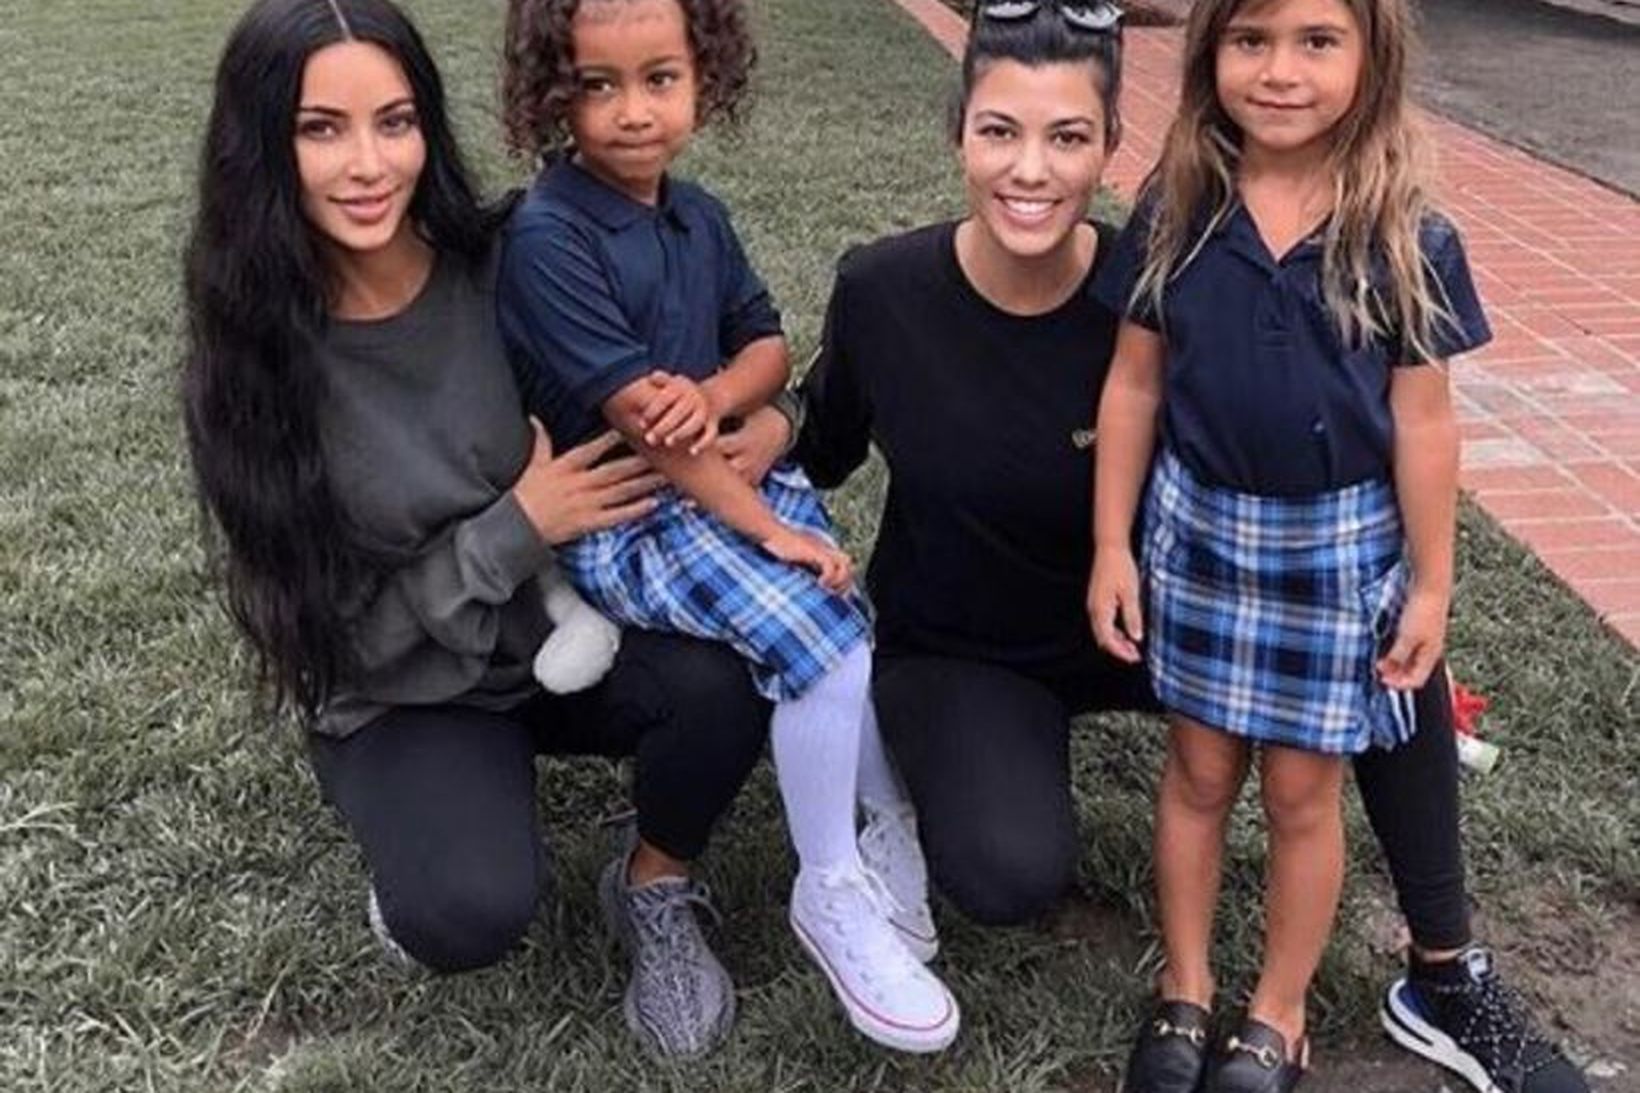 Kim Kardashian birti mynd af sér og dóttur sinni ásamt …